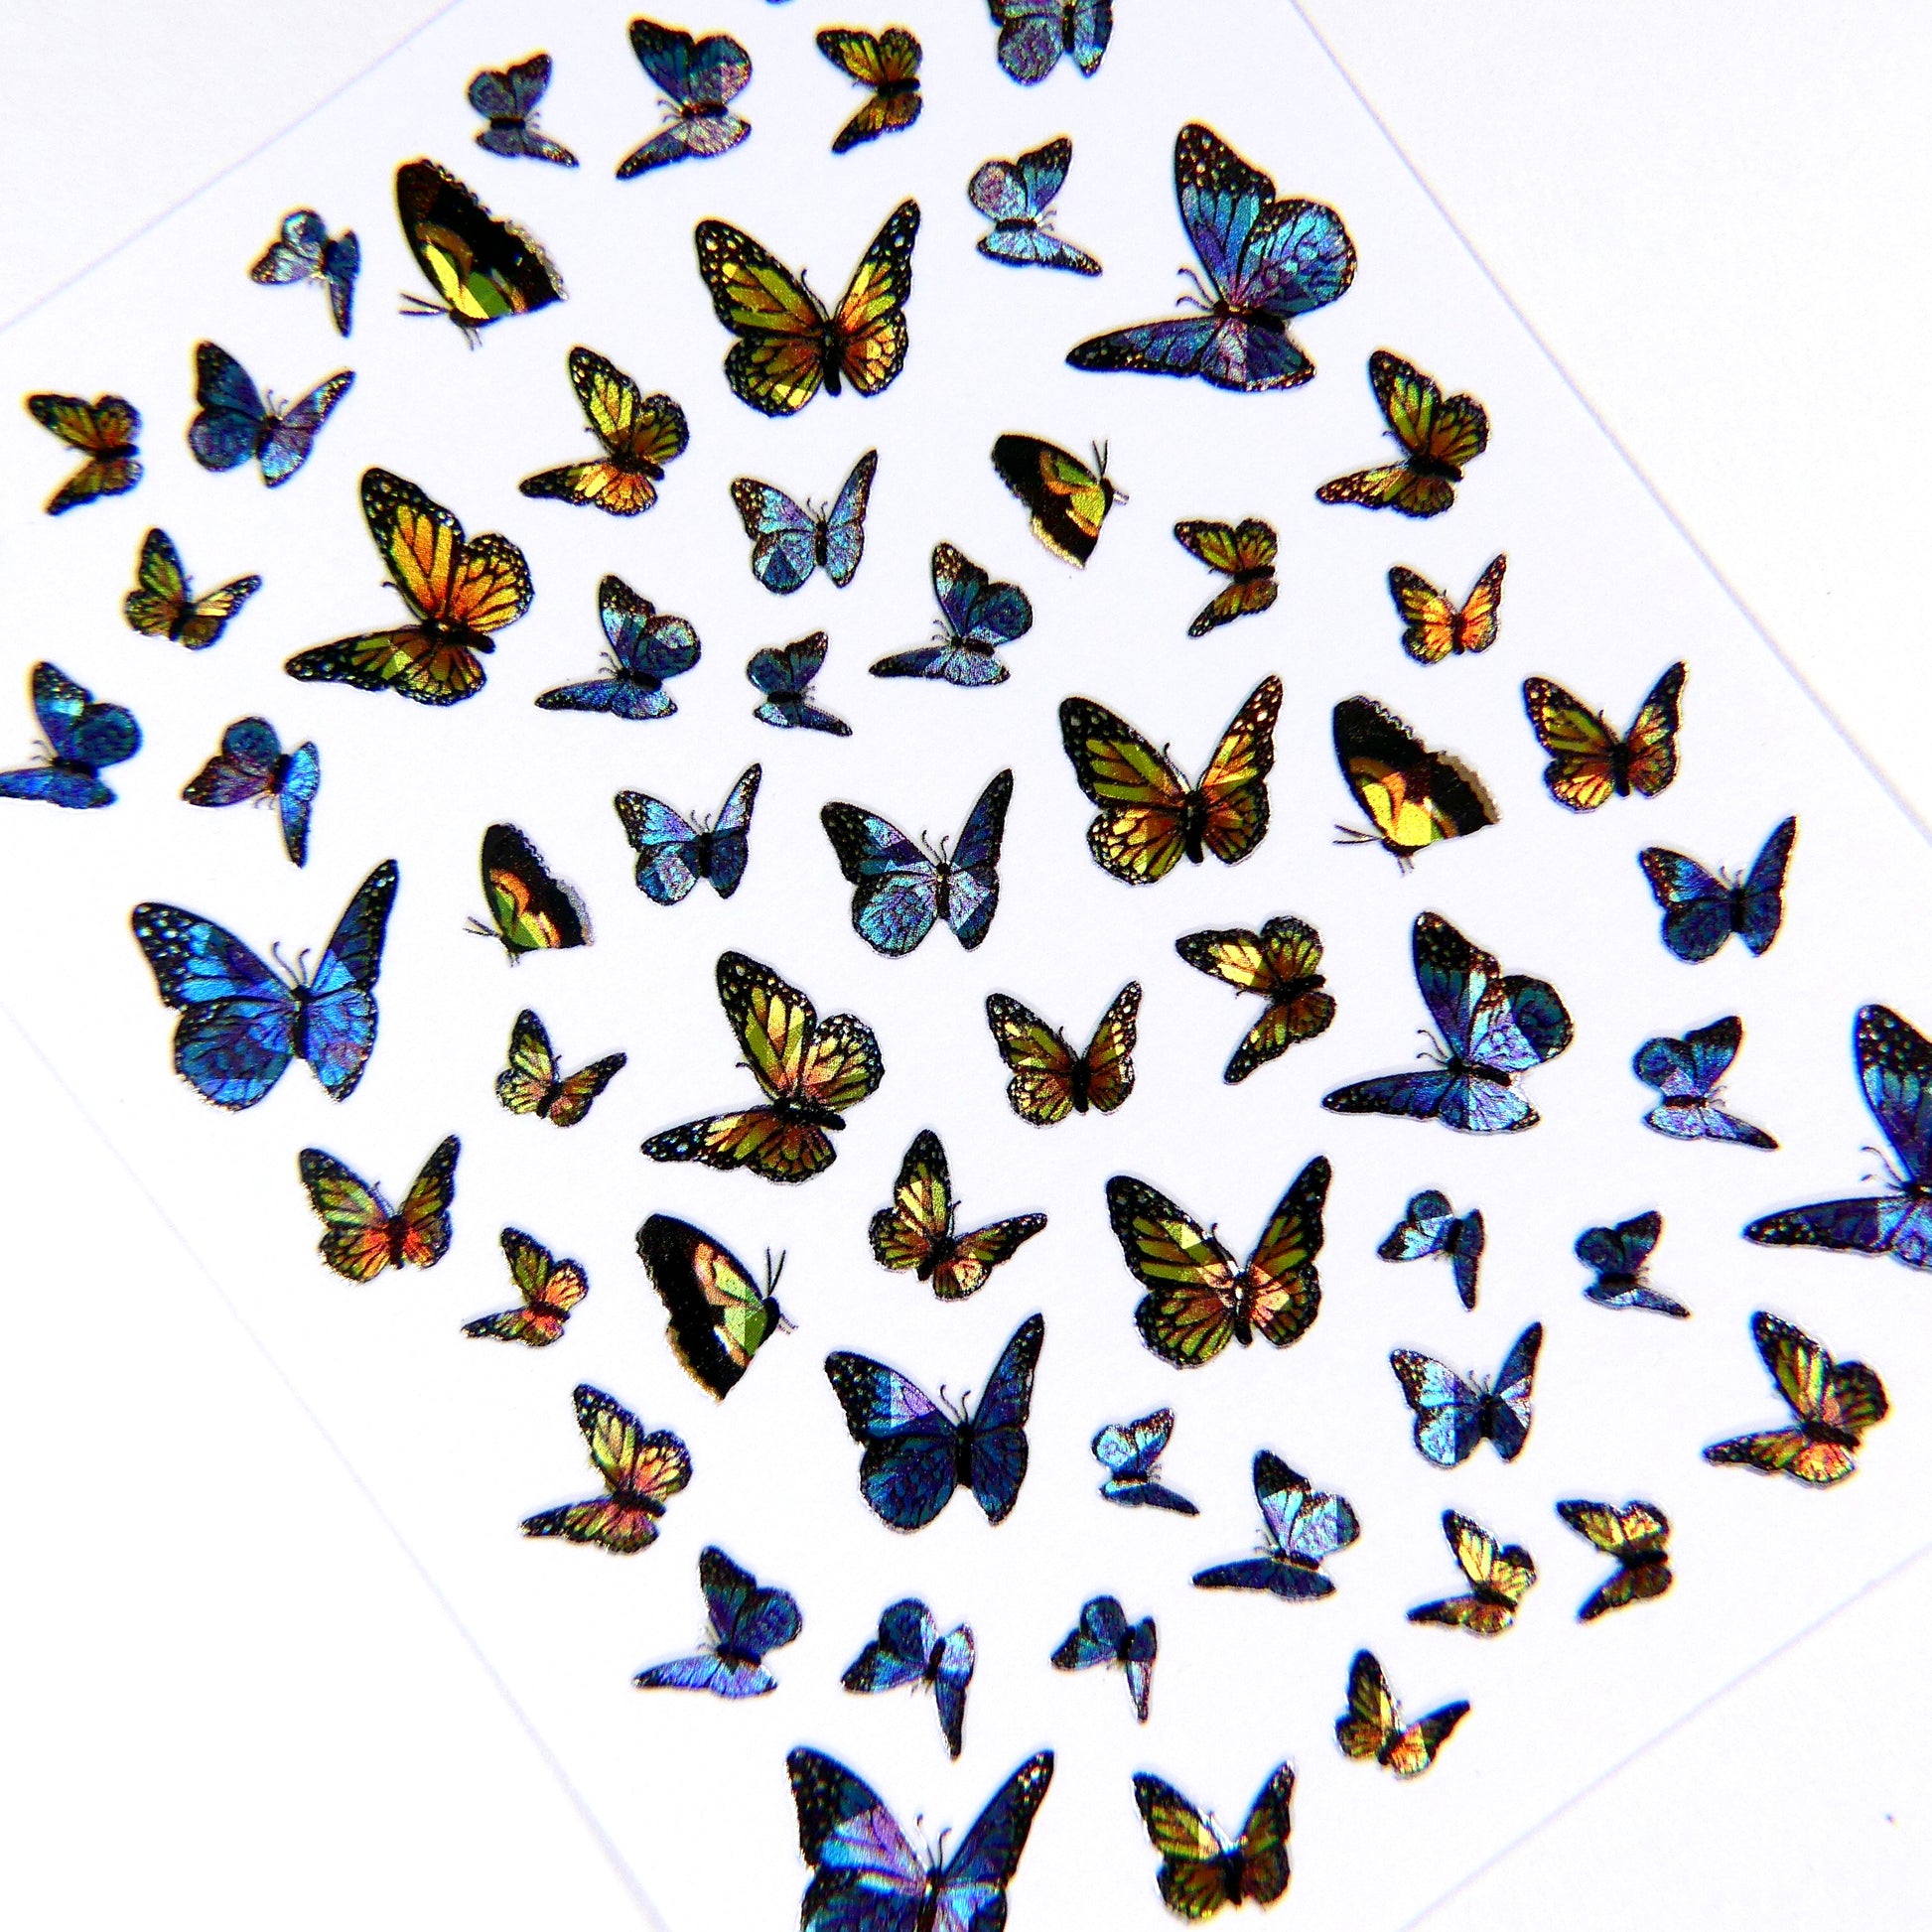 Holographic Butterflies Sticker #2 - My Little Nail Art Shop